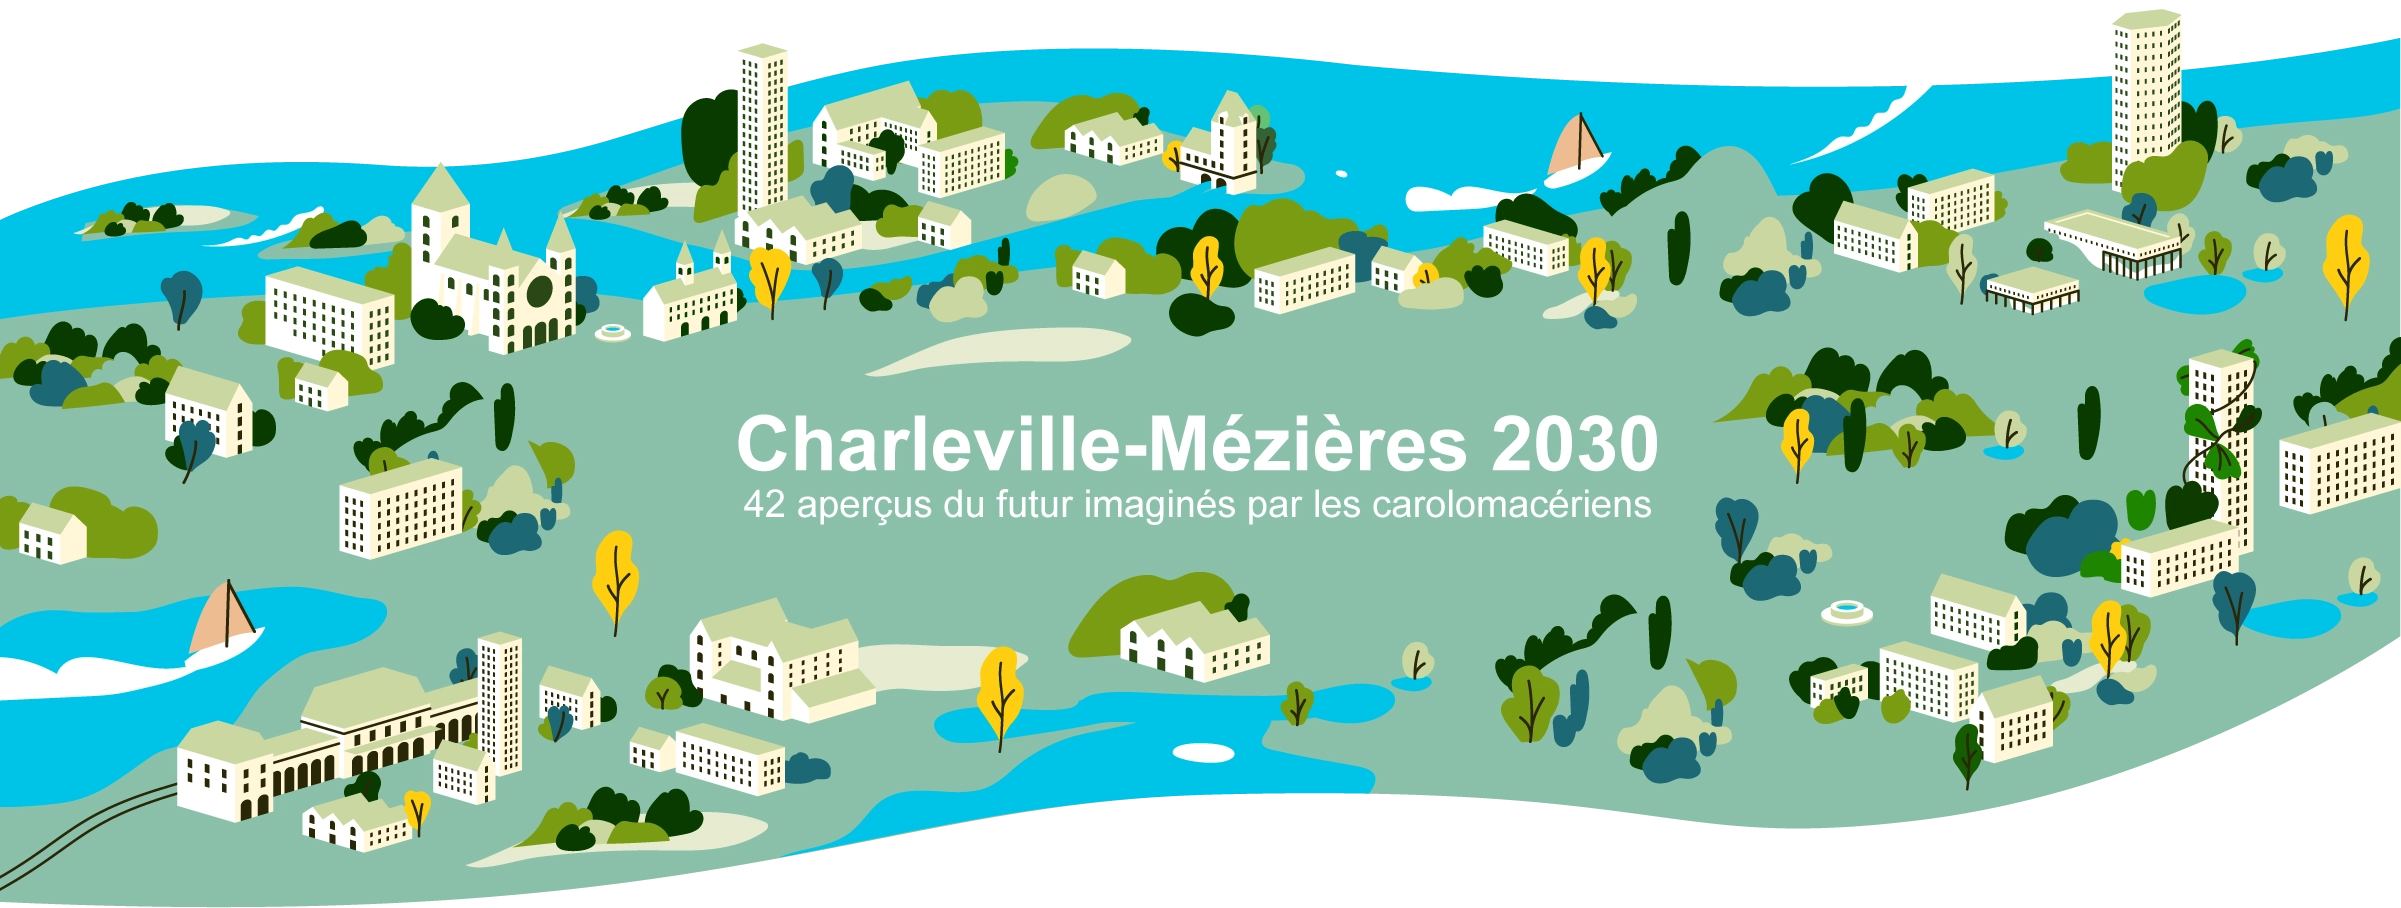 Bannière de présentation du projet Charleville-Mézière 2030